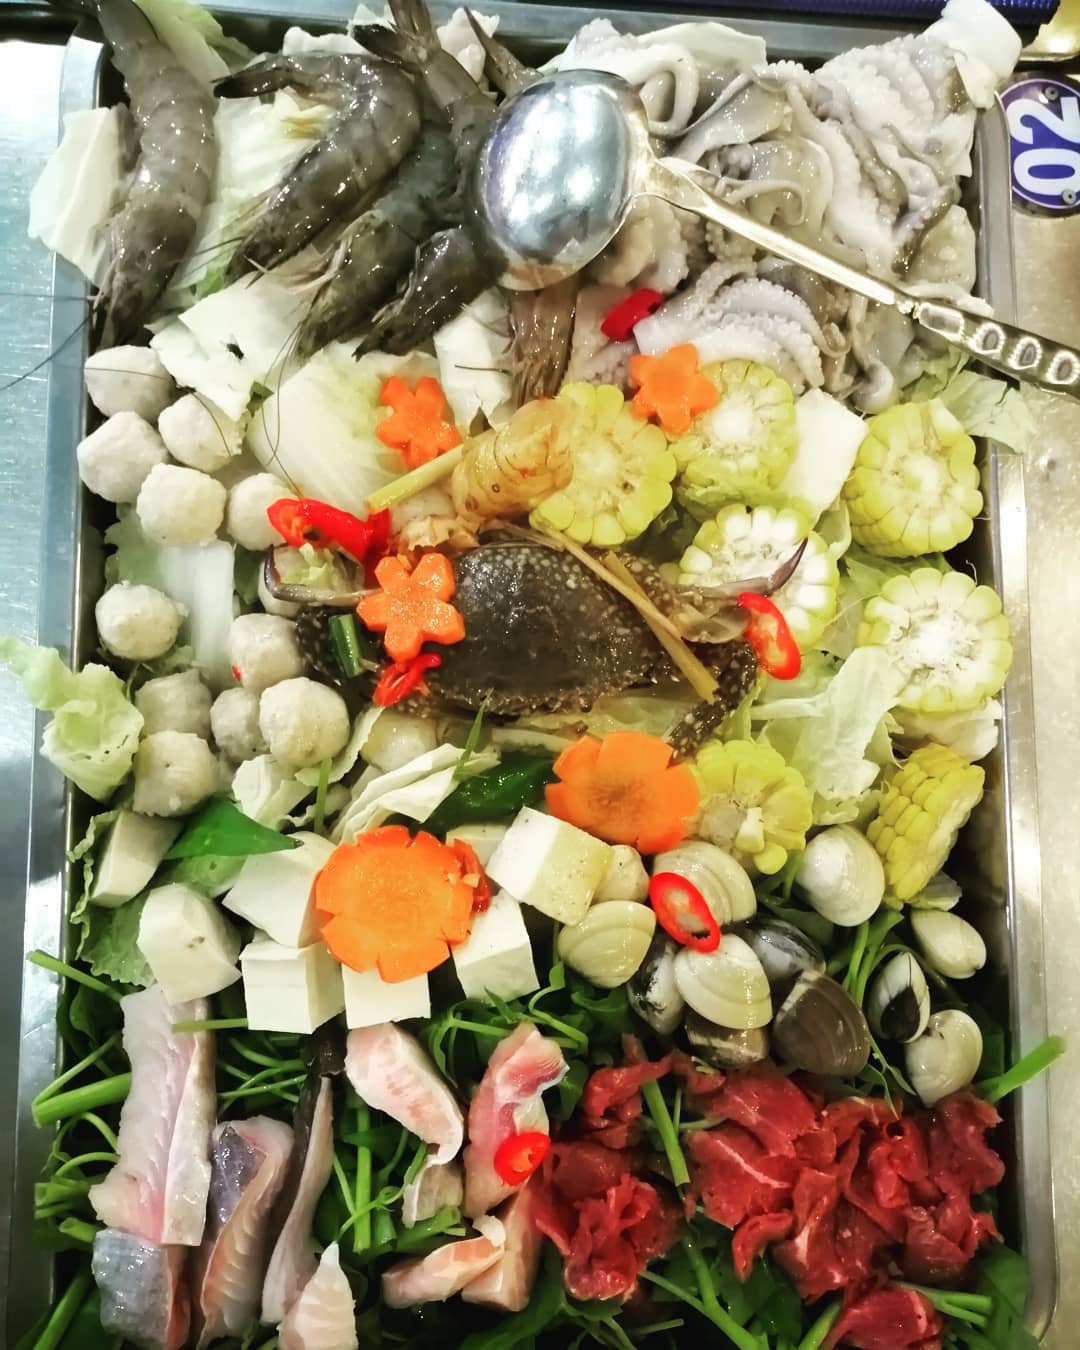 Khay lẩu ở quán La Cà Vũng Tàu đầy ắp các loại hải sản tươi ngon và các loại rau ăn cùng